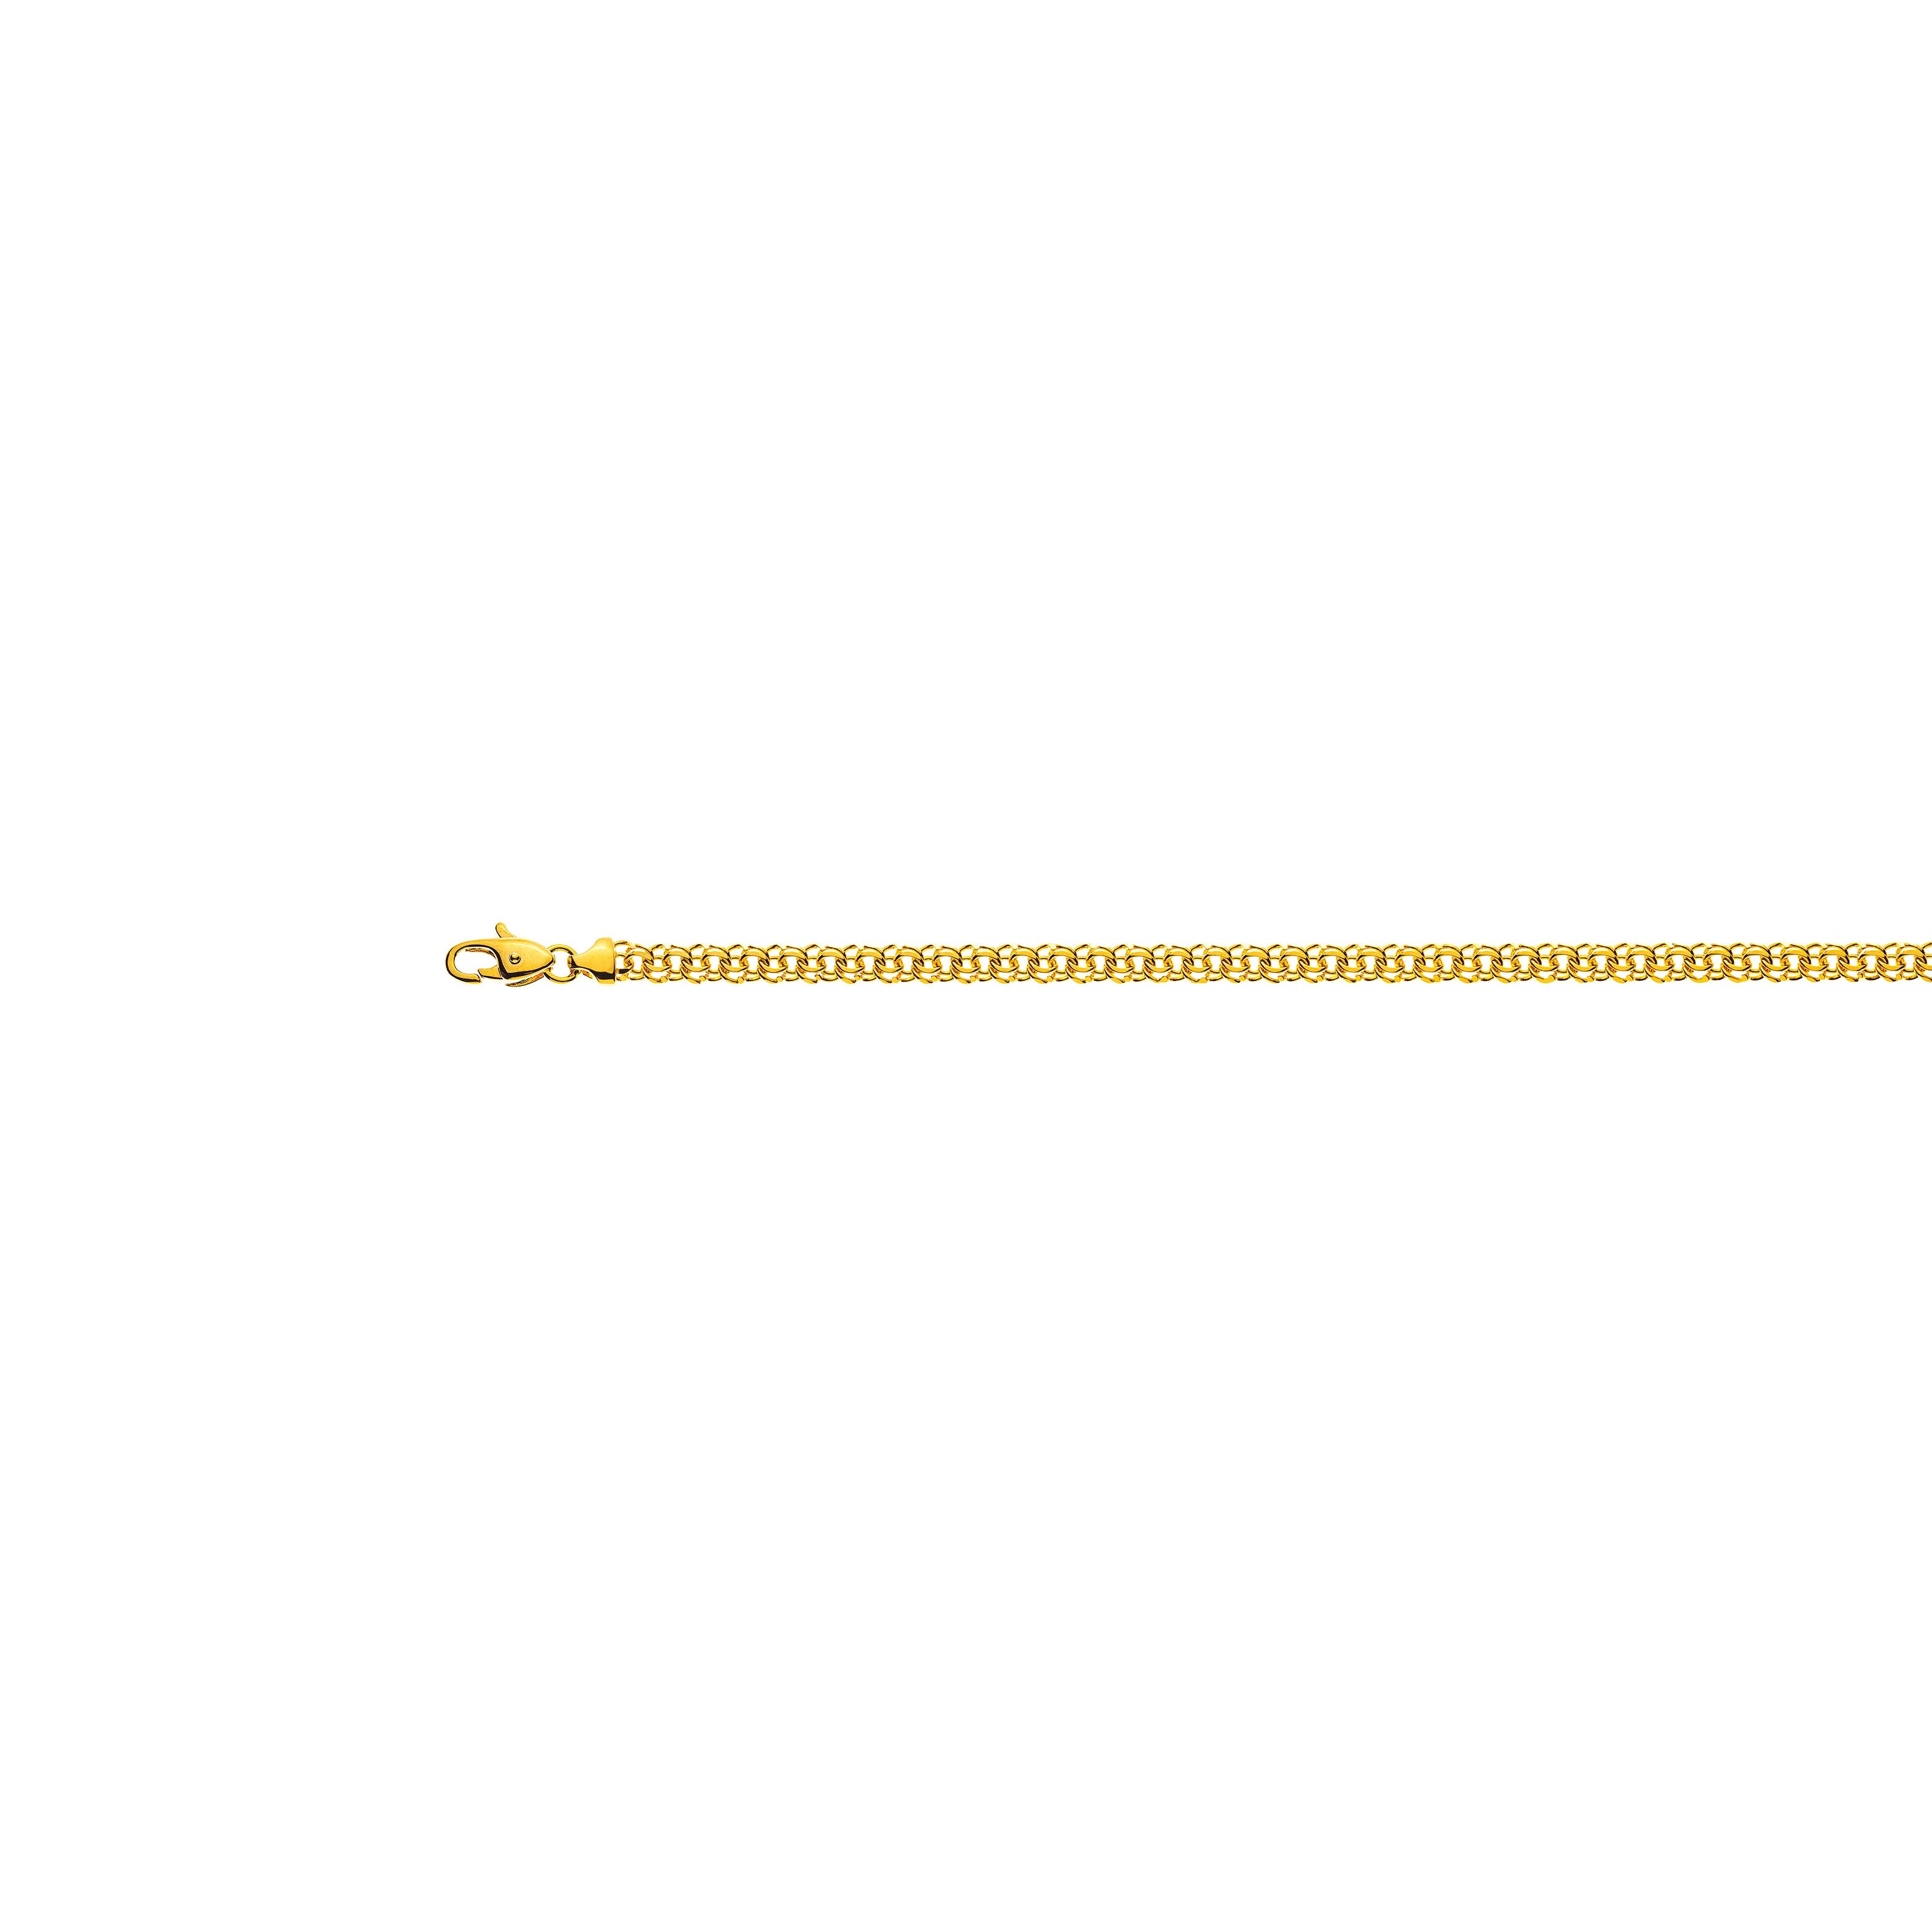 Garibaldi Gelbgold 750, 4.0mm Breite: Zeitlose Eleganz am Handgelenk